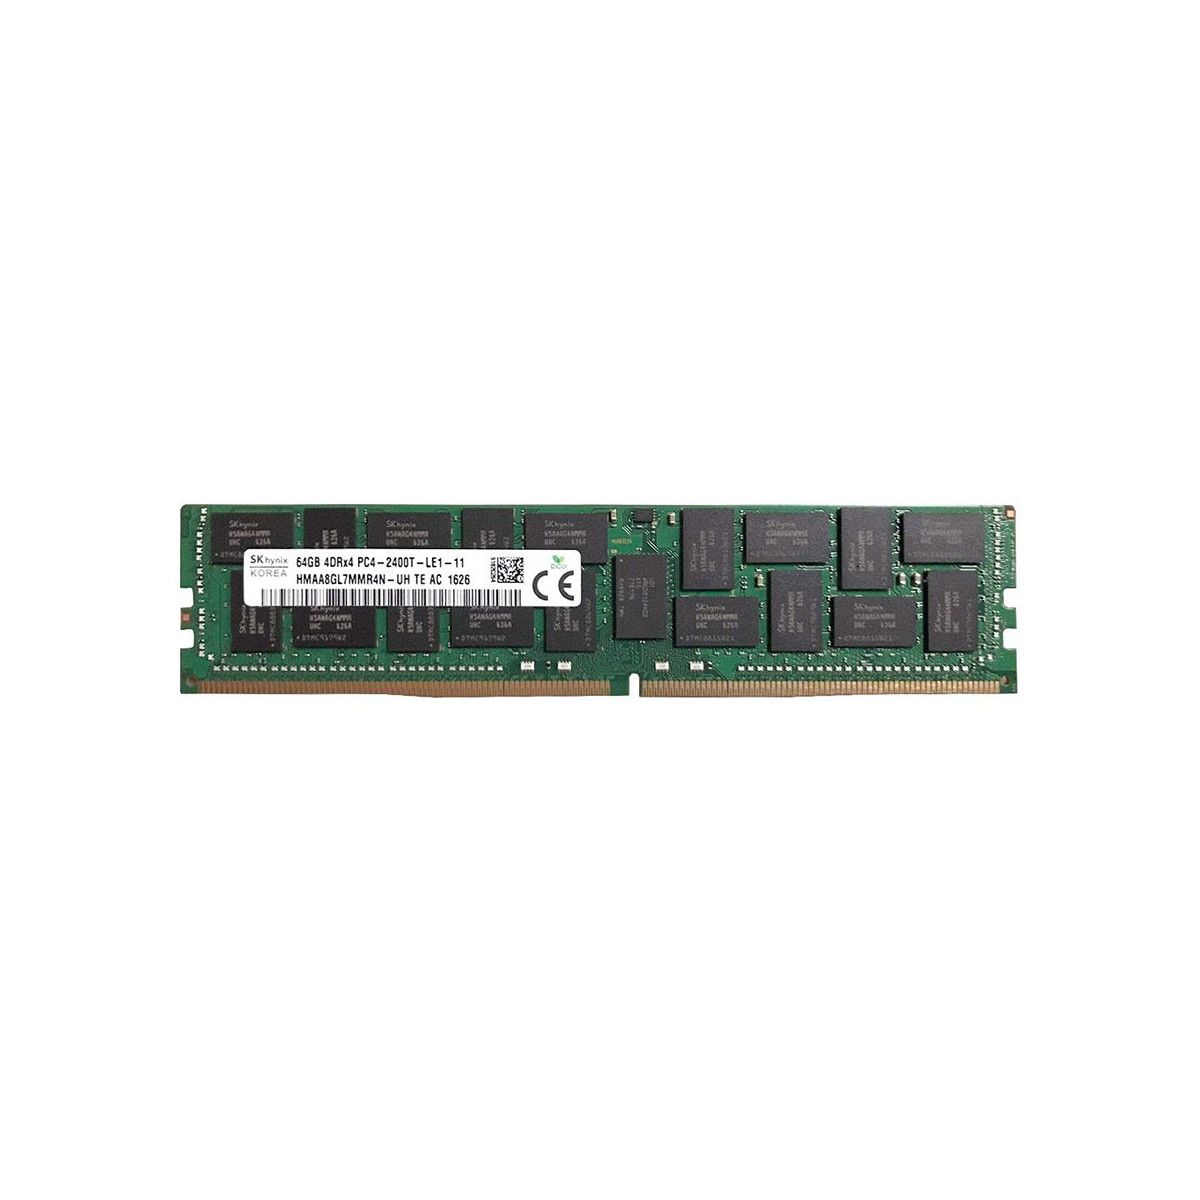 S26361-F3934-E617-MS -NO- Memstar 1x 64GB DDR4-2400 LRDIMM PC4-19200T-R